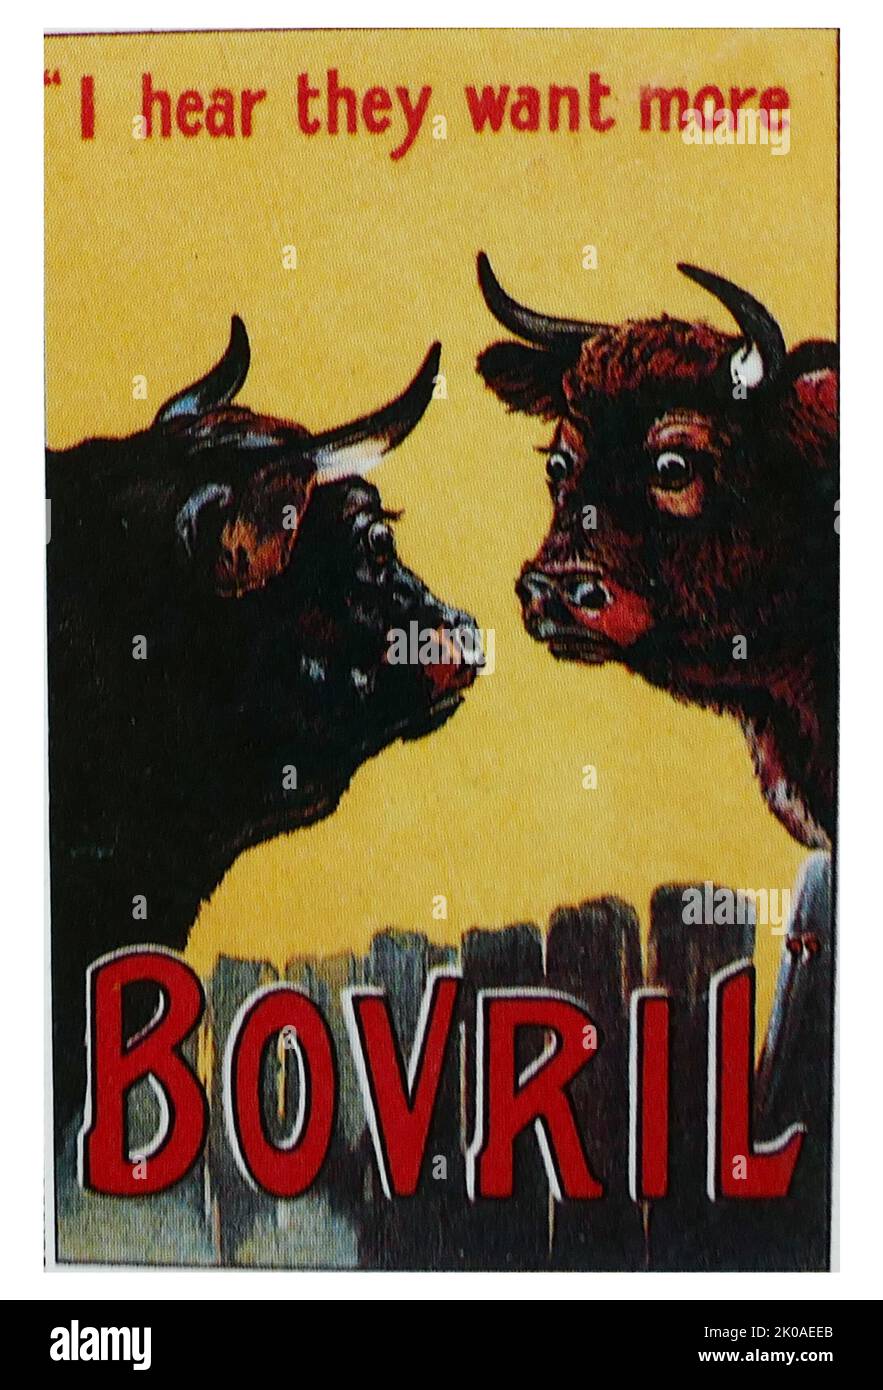 Werbung für Bovril (12930), den markenrechtlich geschützten Namen einer dicken und salzigen Fleischextraktpaste ähnlich einem Hefeextrakt, der 1870s von John Lawson Johnston entwickelt wurde Stockfoto